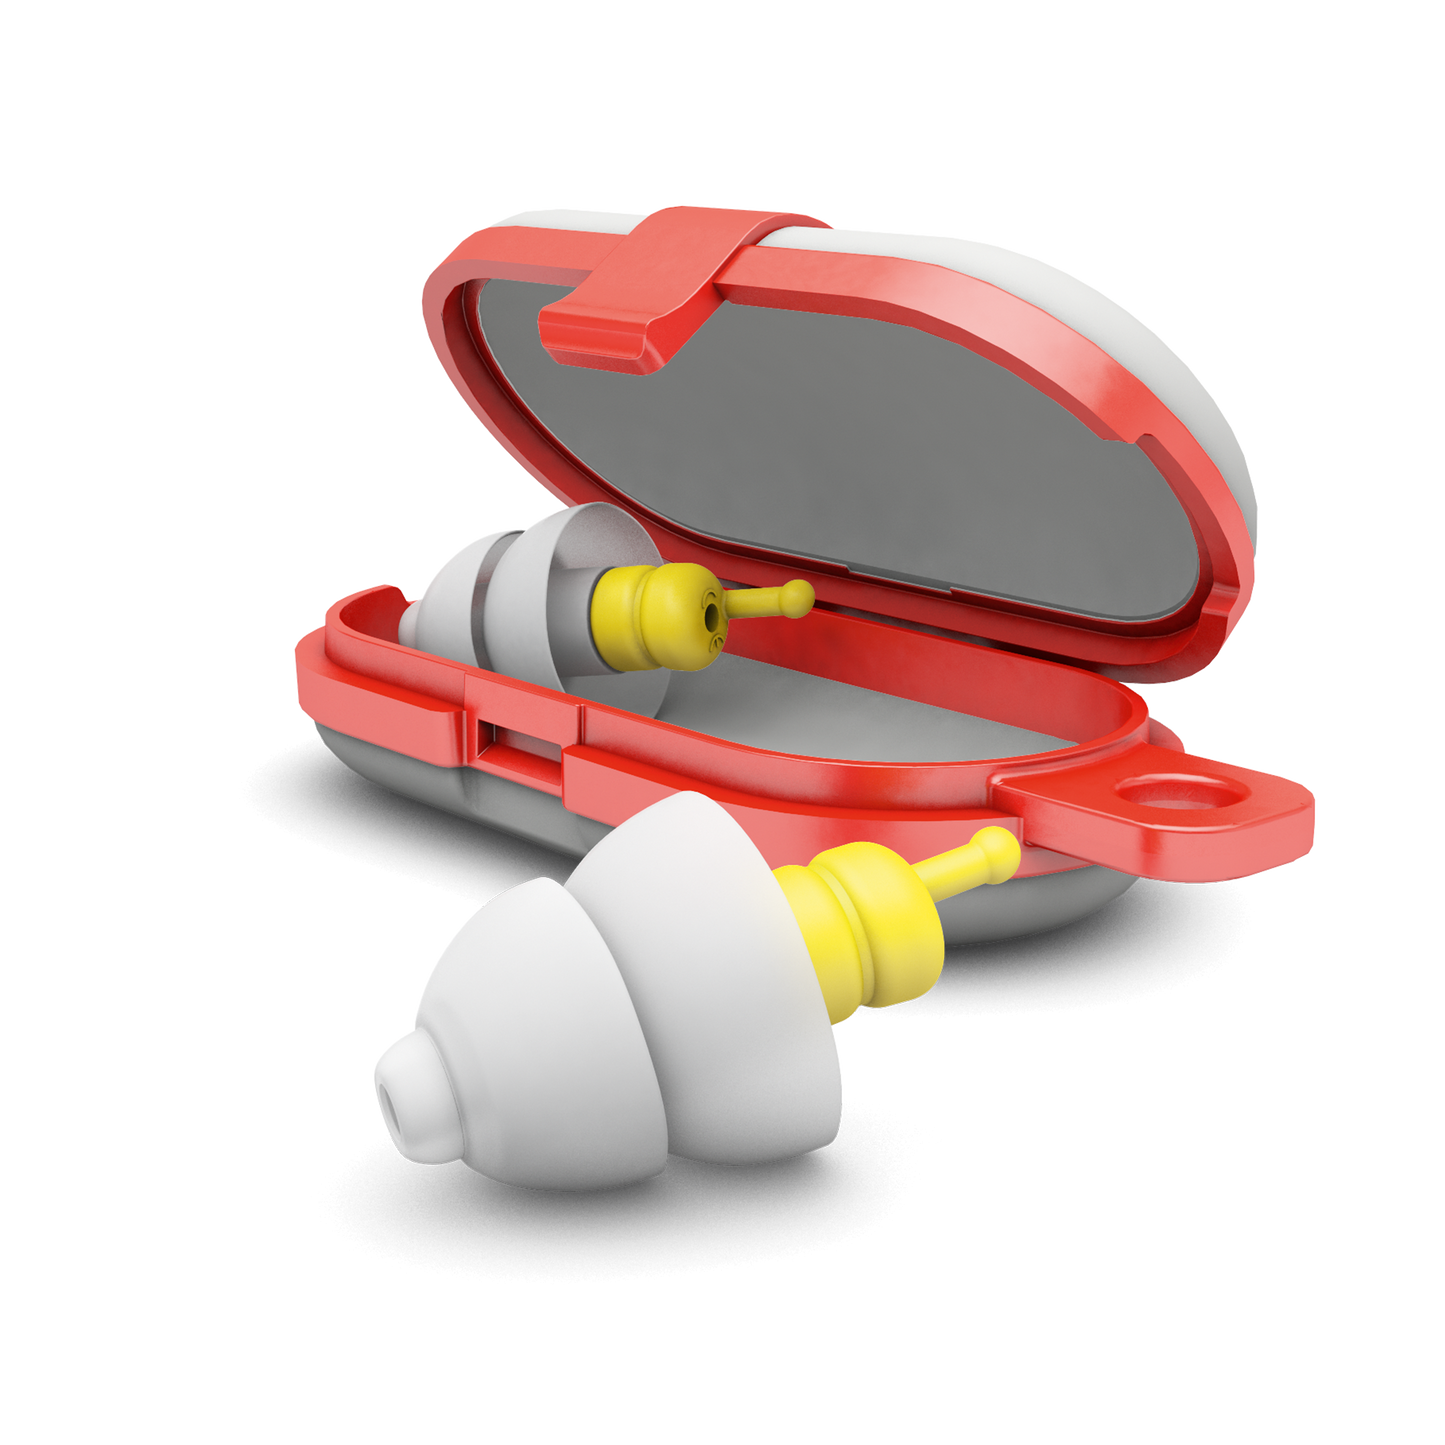 Gehoorbescherming voor tijdens het vliegen Alpine FlyFit Alpine hearing protection Oordoppen oorkappen beschermen uw oor red dot award vliegen reizen bescherming tegen lawaai vakantie druk op de trommelvliezen Drukregulerende filter